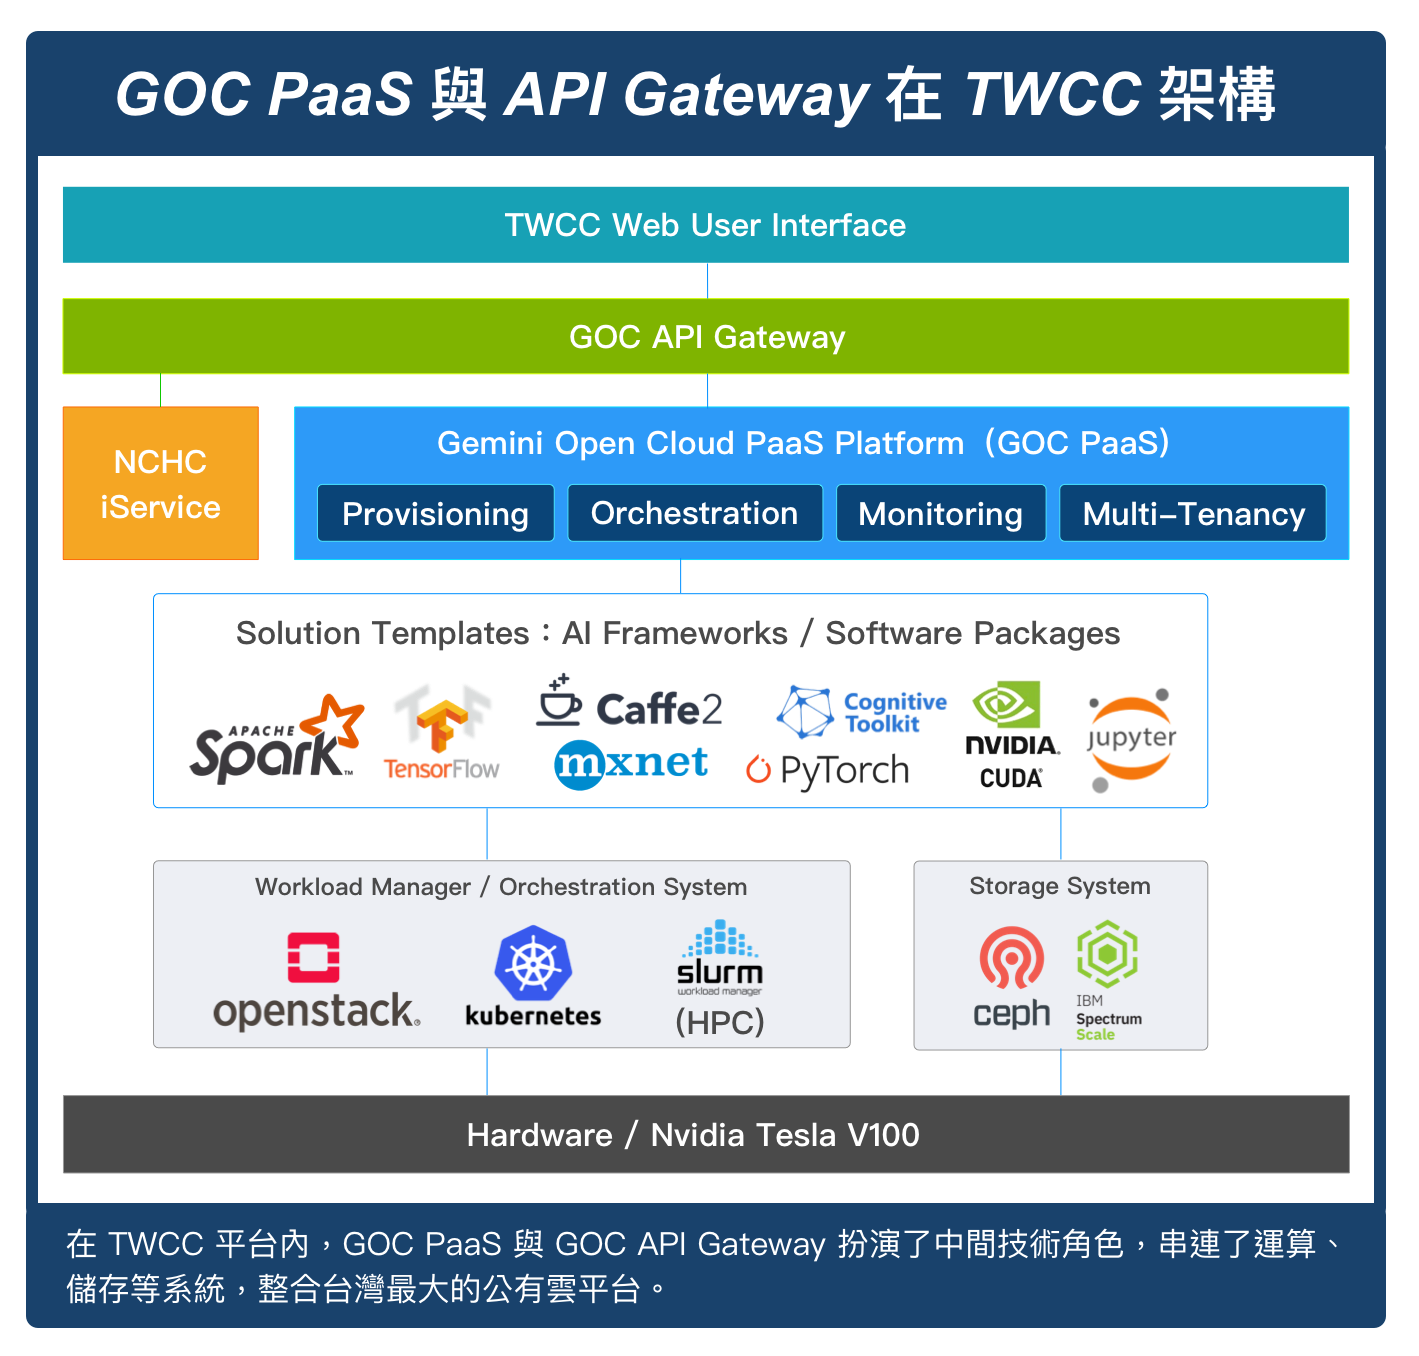 台灣 AI 雲建置推手！雙子星雲端如何串接起台灣最大的公有雲端平台？